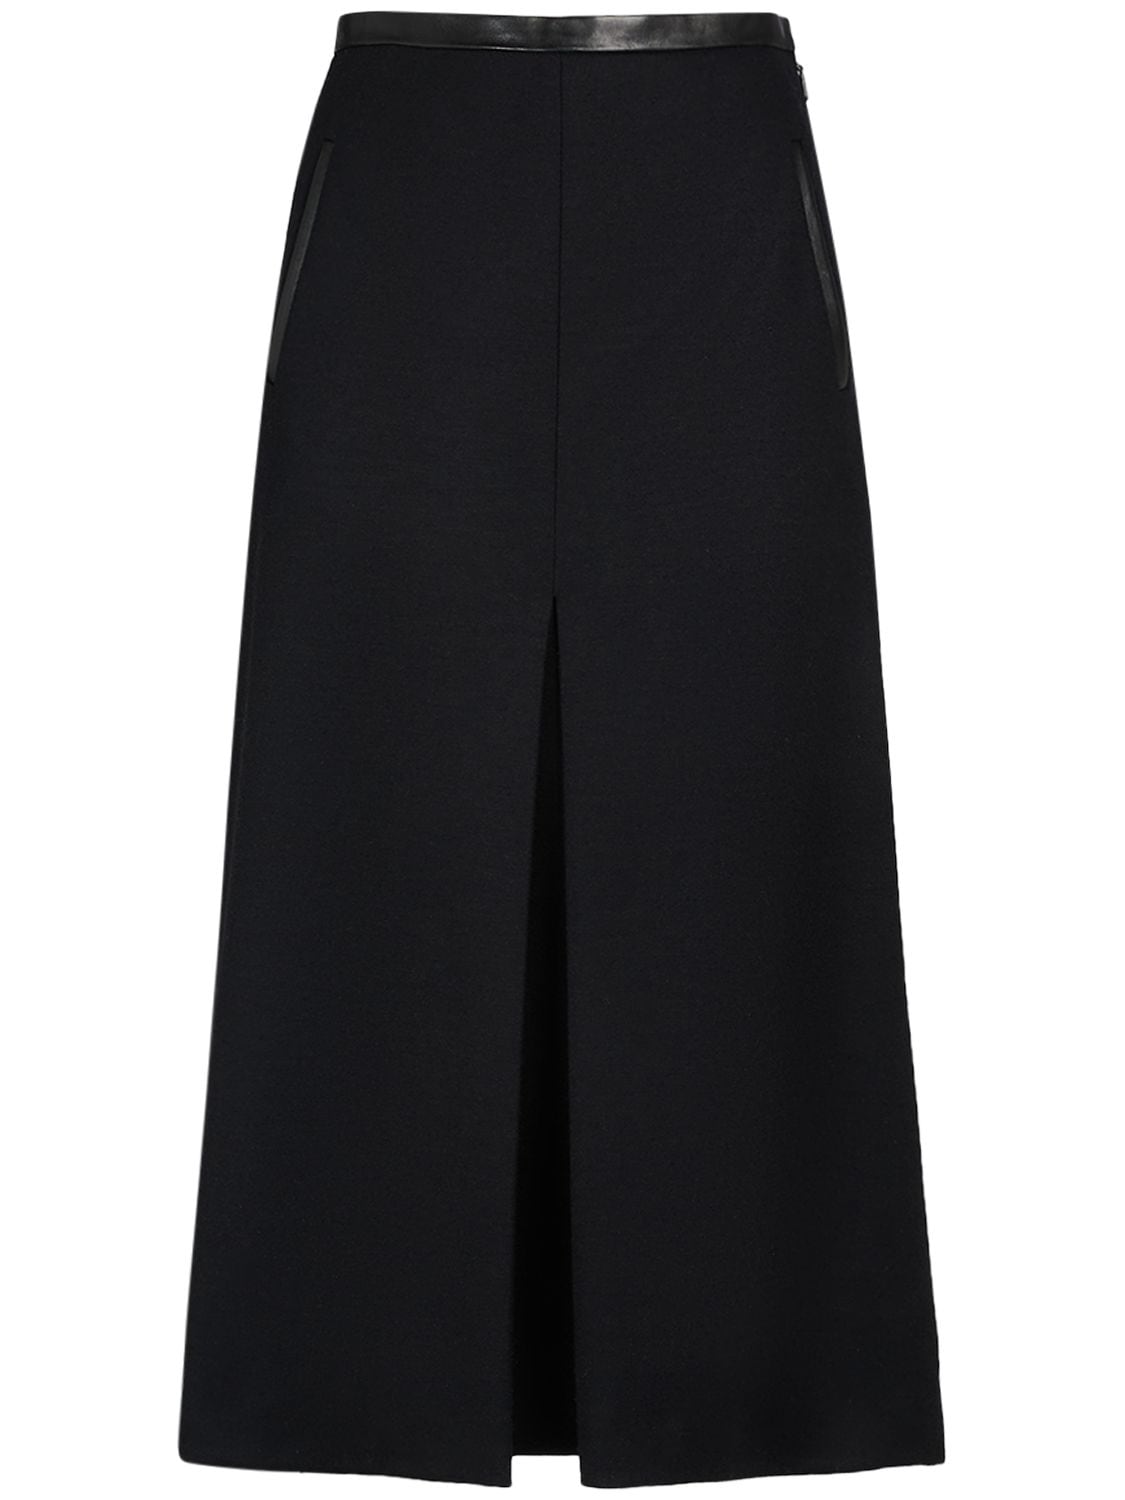 Image of Wool Blend Long Skirt